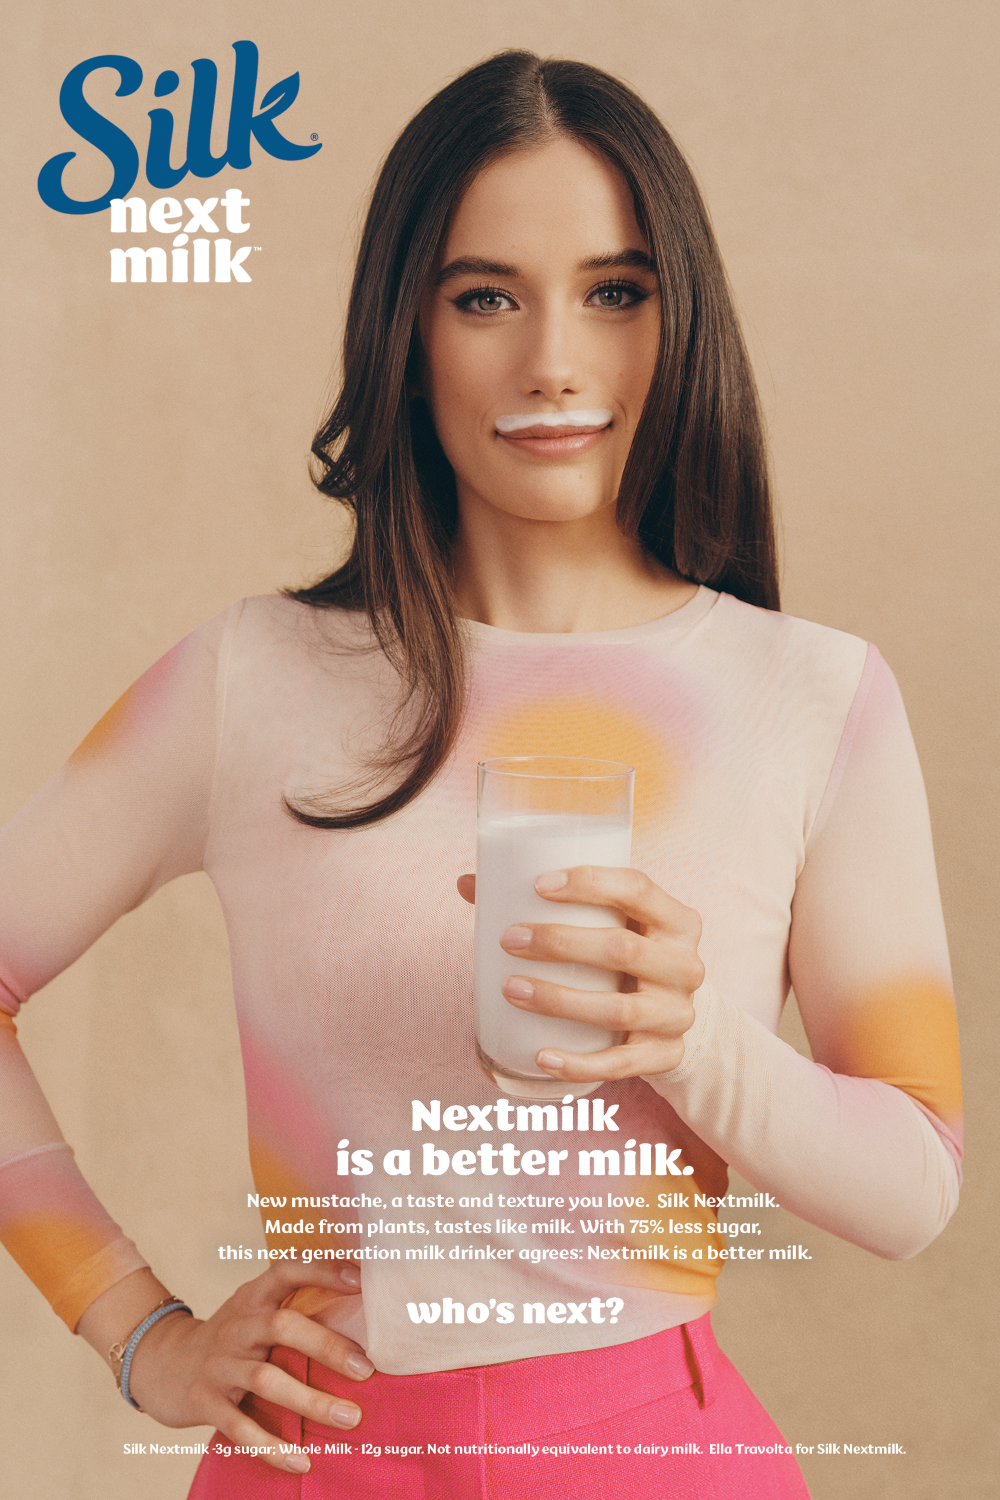 Danone North America’s Silk Nextmilk ‘Stache campaign 